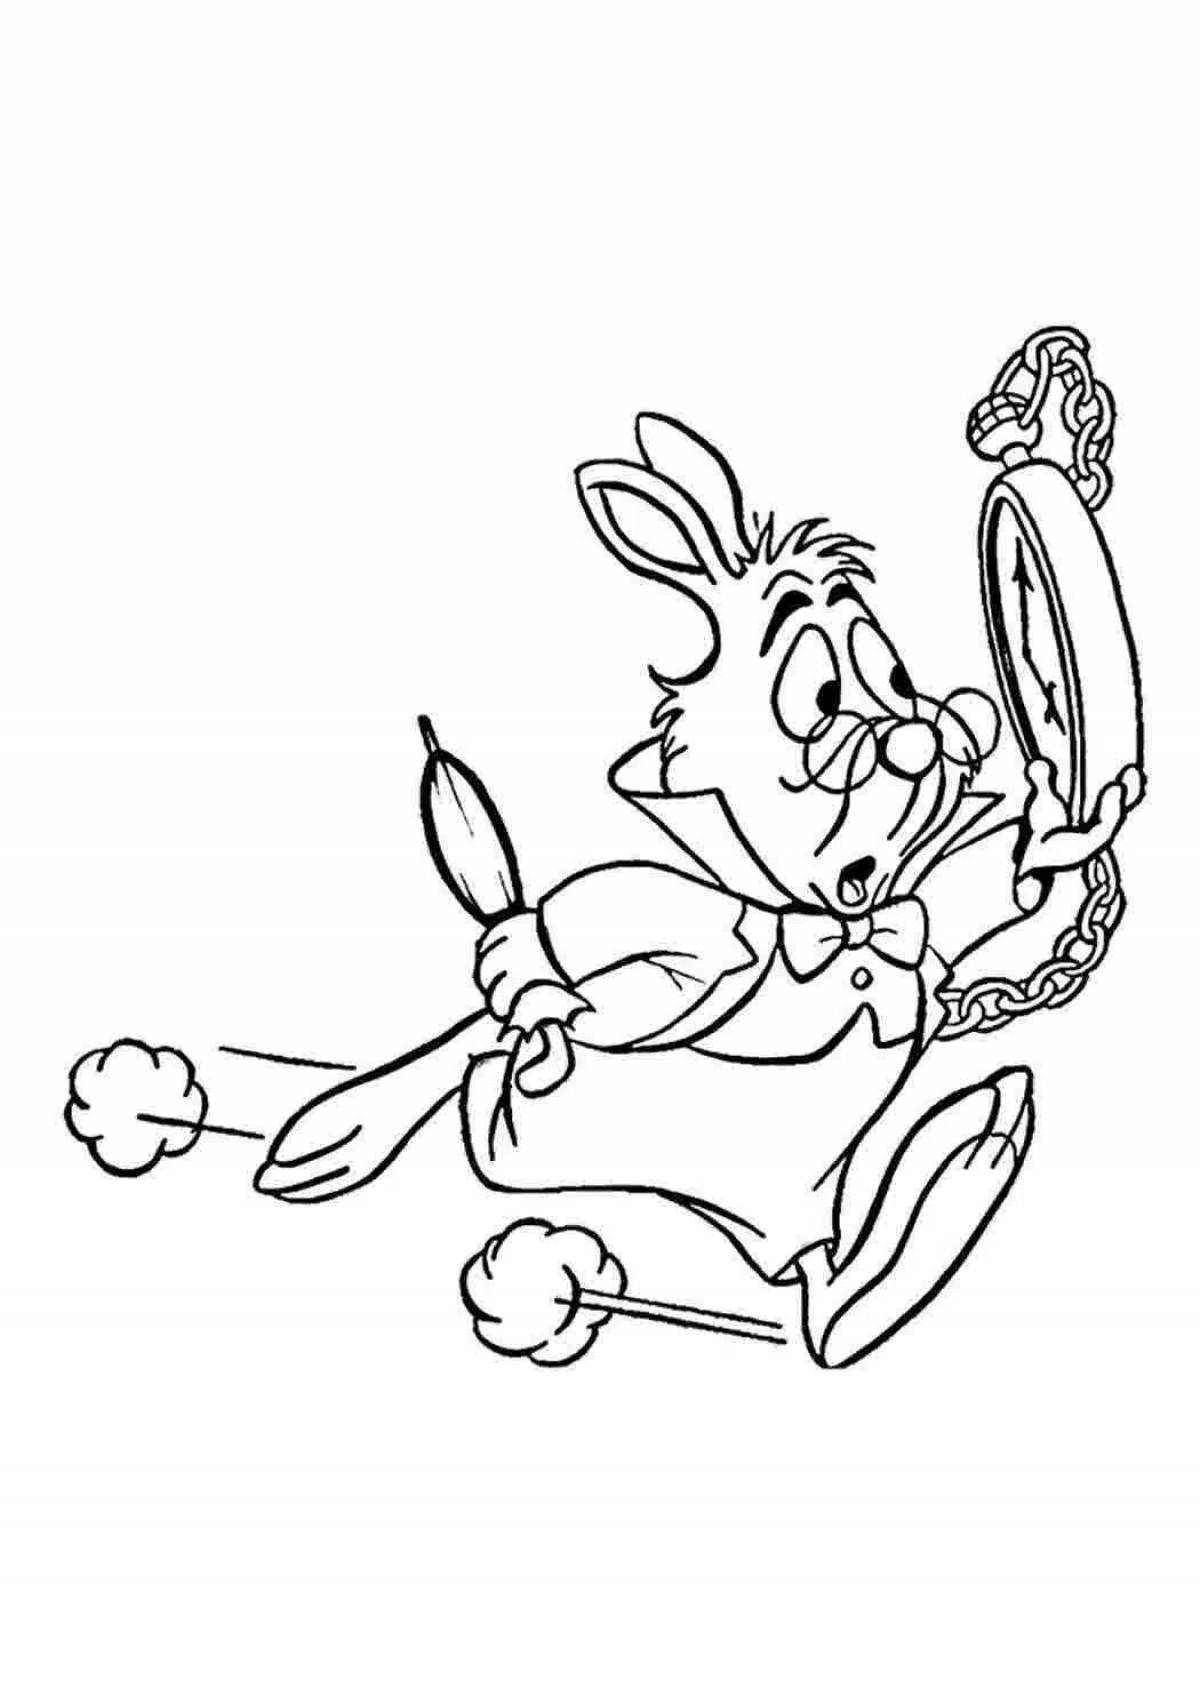 Joyful bunny from Alice in Wonderland